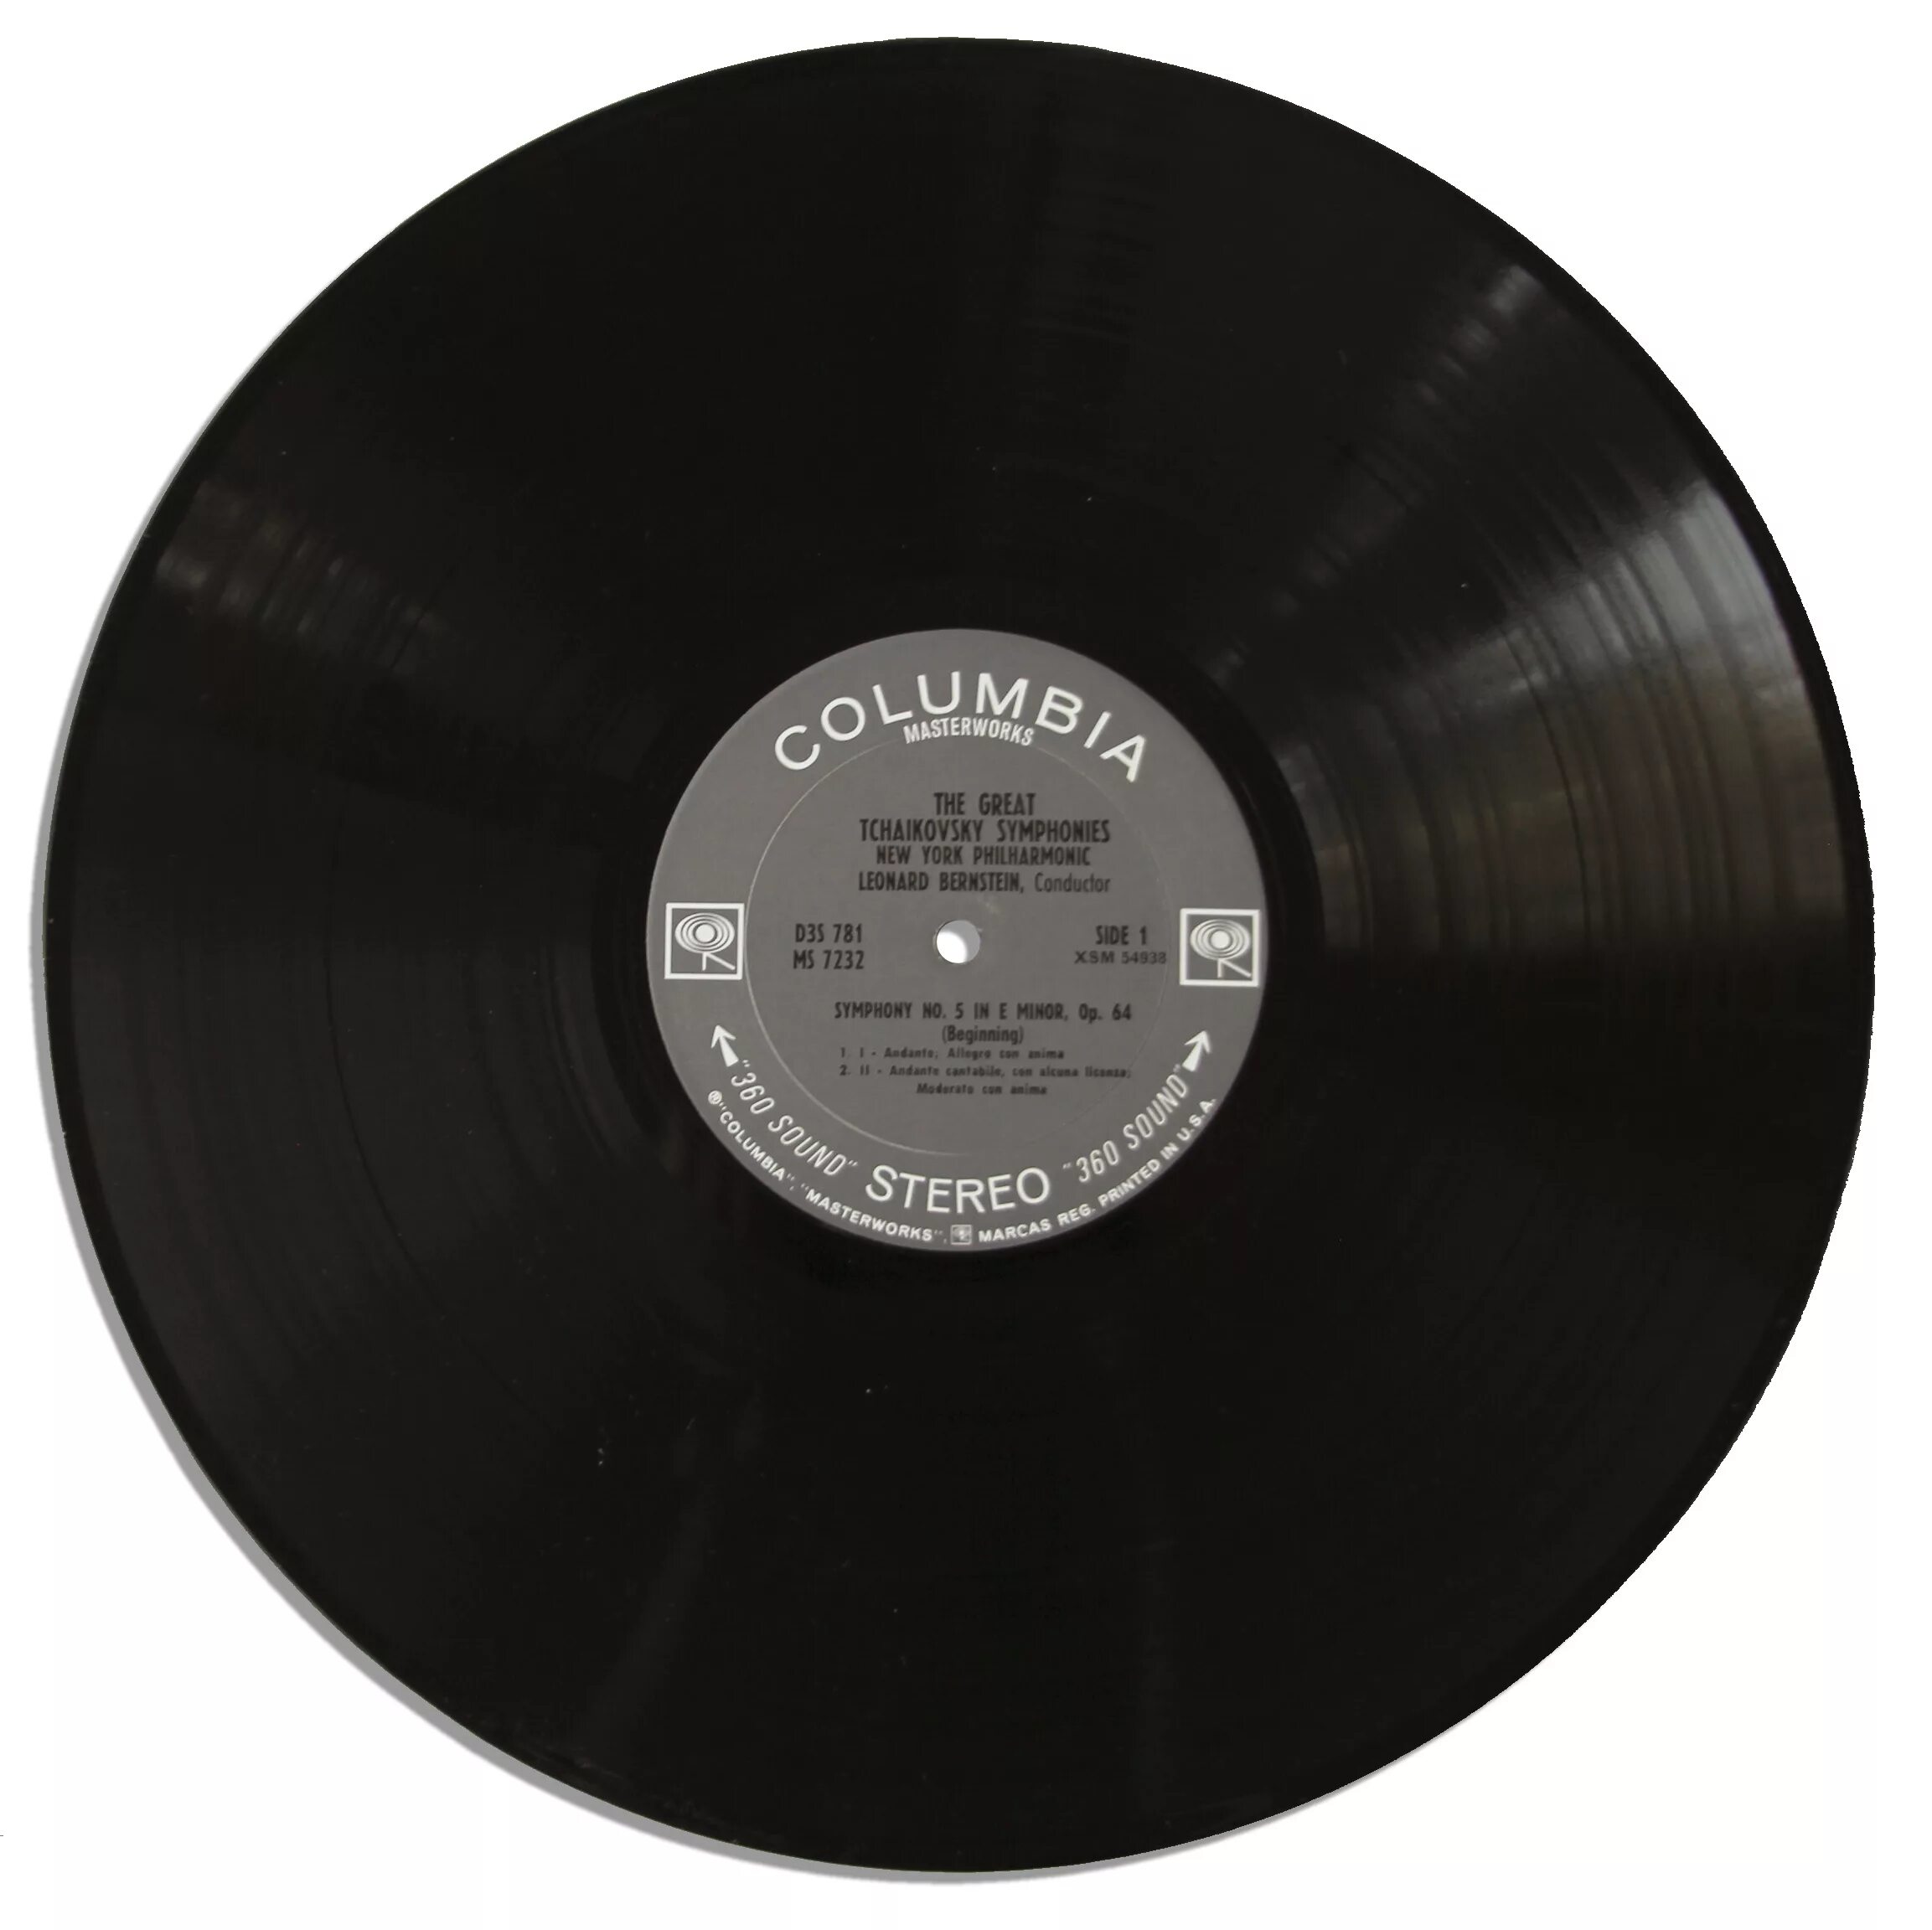 Машин рекордс винил. Jazz LP Vinyl 1978. LP records. Silver Beatles LP Vinyl. LP records 1981.